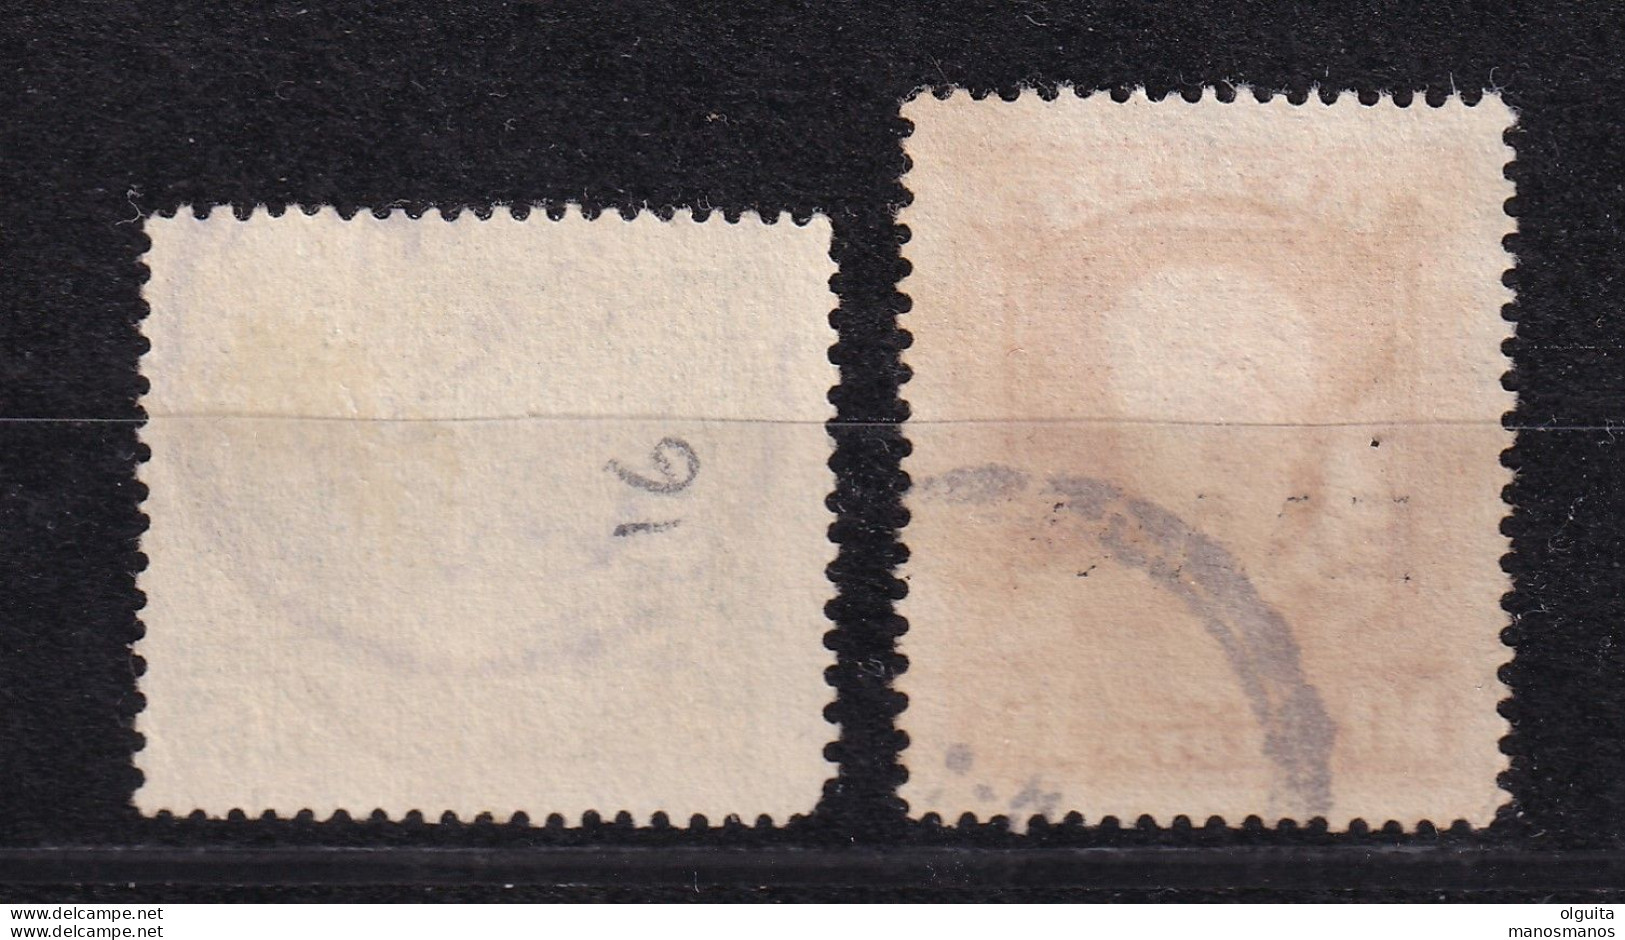 DCPGR 076 - CRETE RURAL Posthorn Cancels - Nr 16(BAMOS) On 2 Crete Ellas Stamps - Catalogue Hellas 15 EUR X 2 - Crète